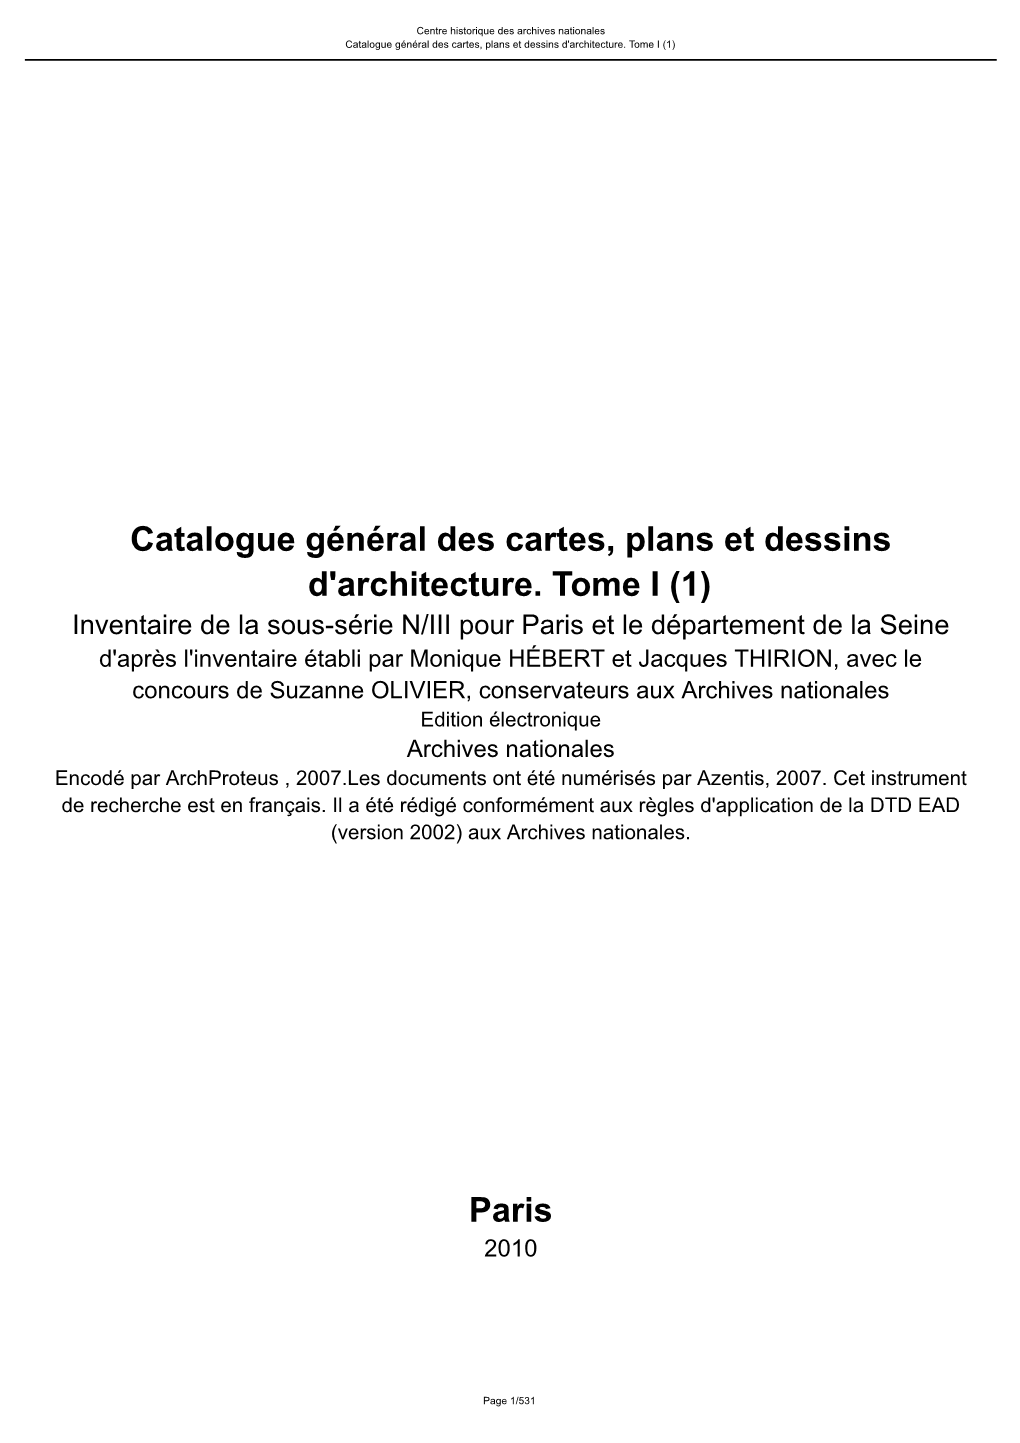 Catalogue Général Des Cartes, Plans Et Dessins D'architecture. Tome I (1)